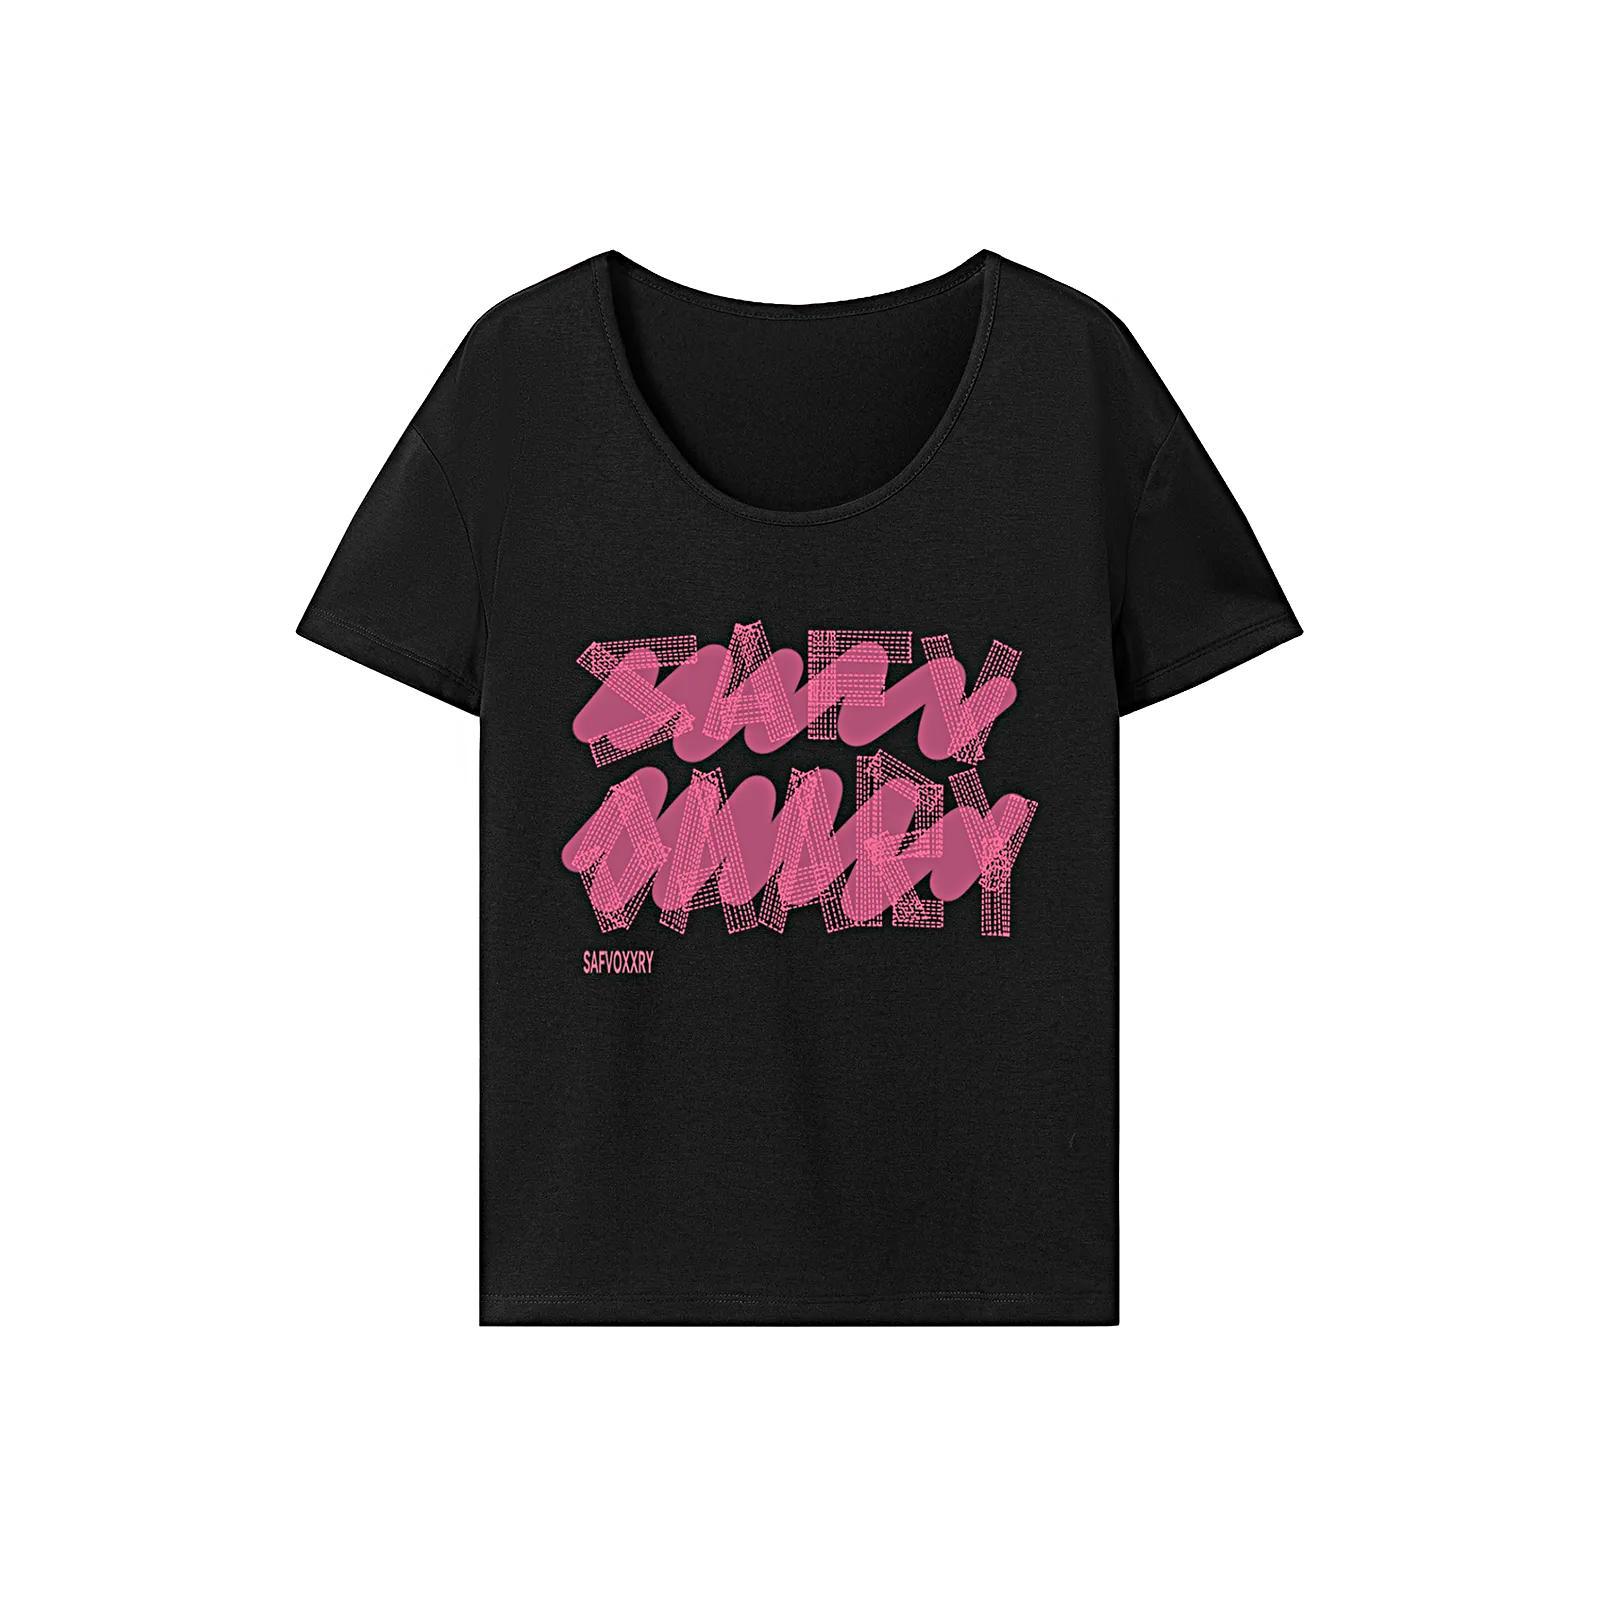 T Shirt for Women Summer Lightweight Crew Neck Tee for Walking Shopping Work L